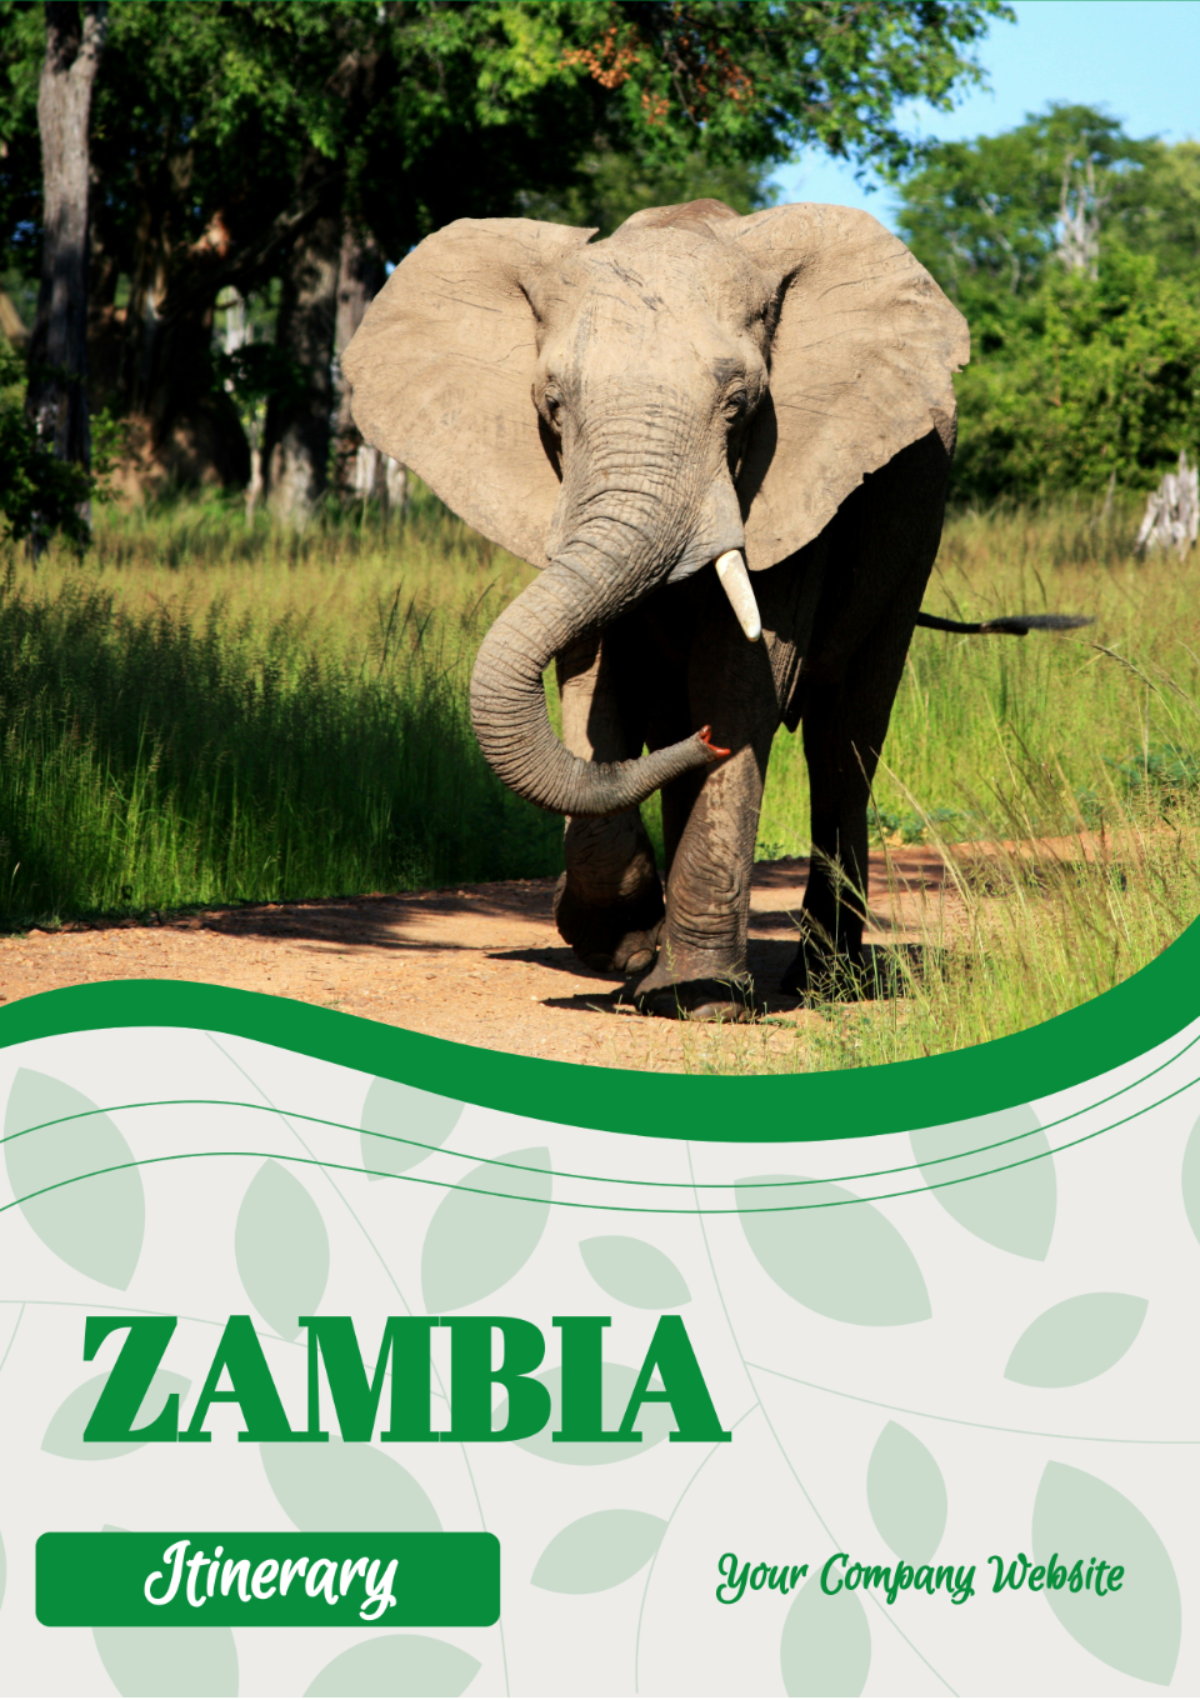 Zambia Itinerary Template